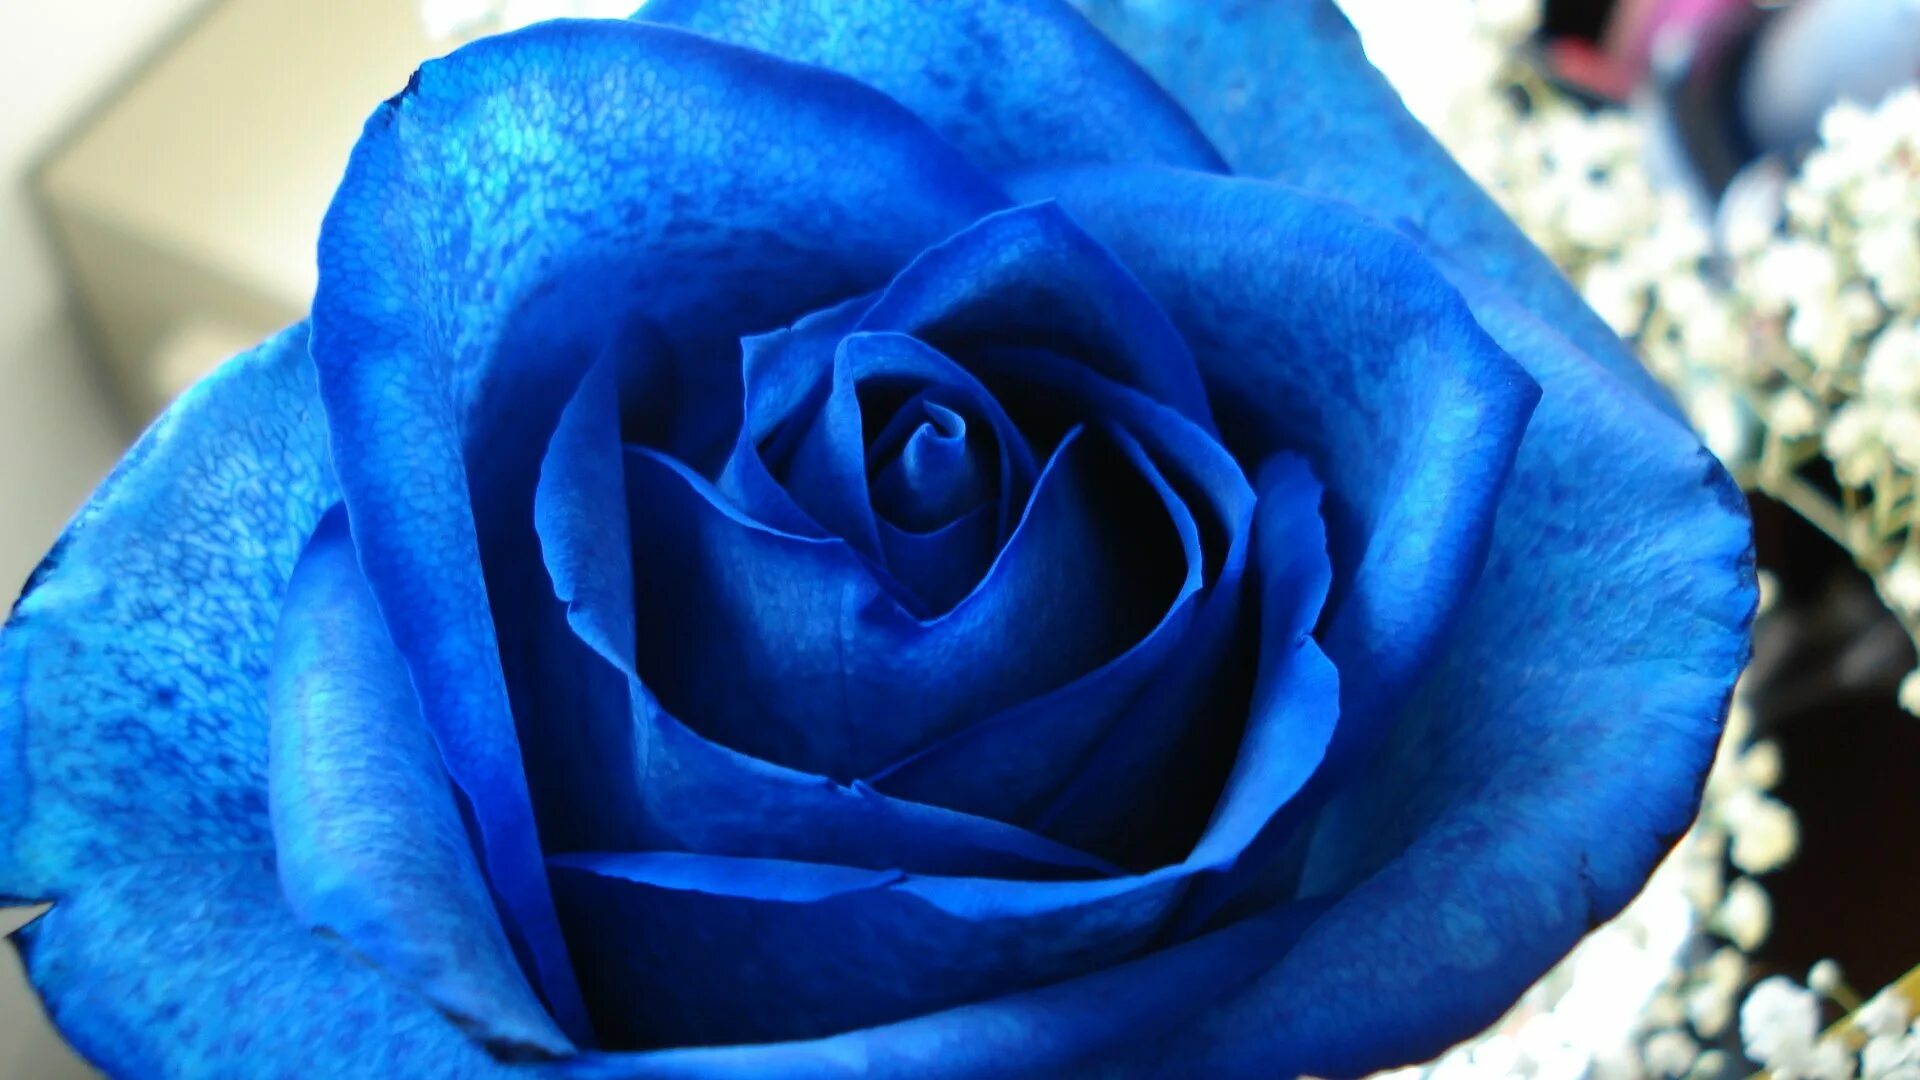 Синий раз. Синяя роза. Синий цвет. Синие розы фон. Красивые голубые розы.